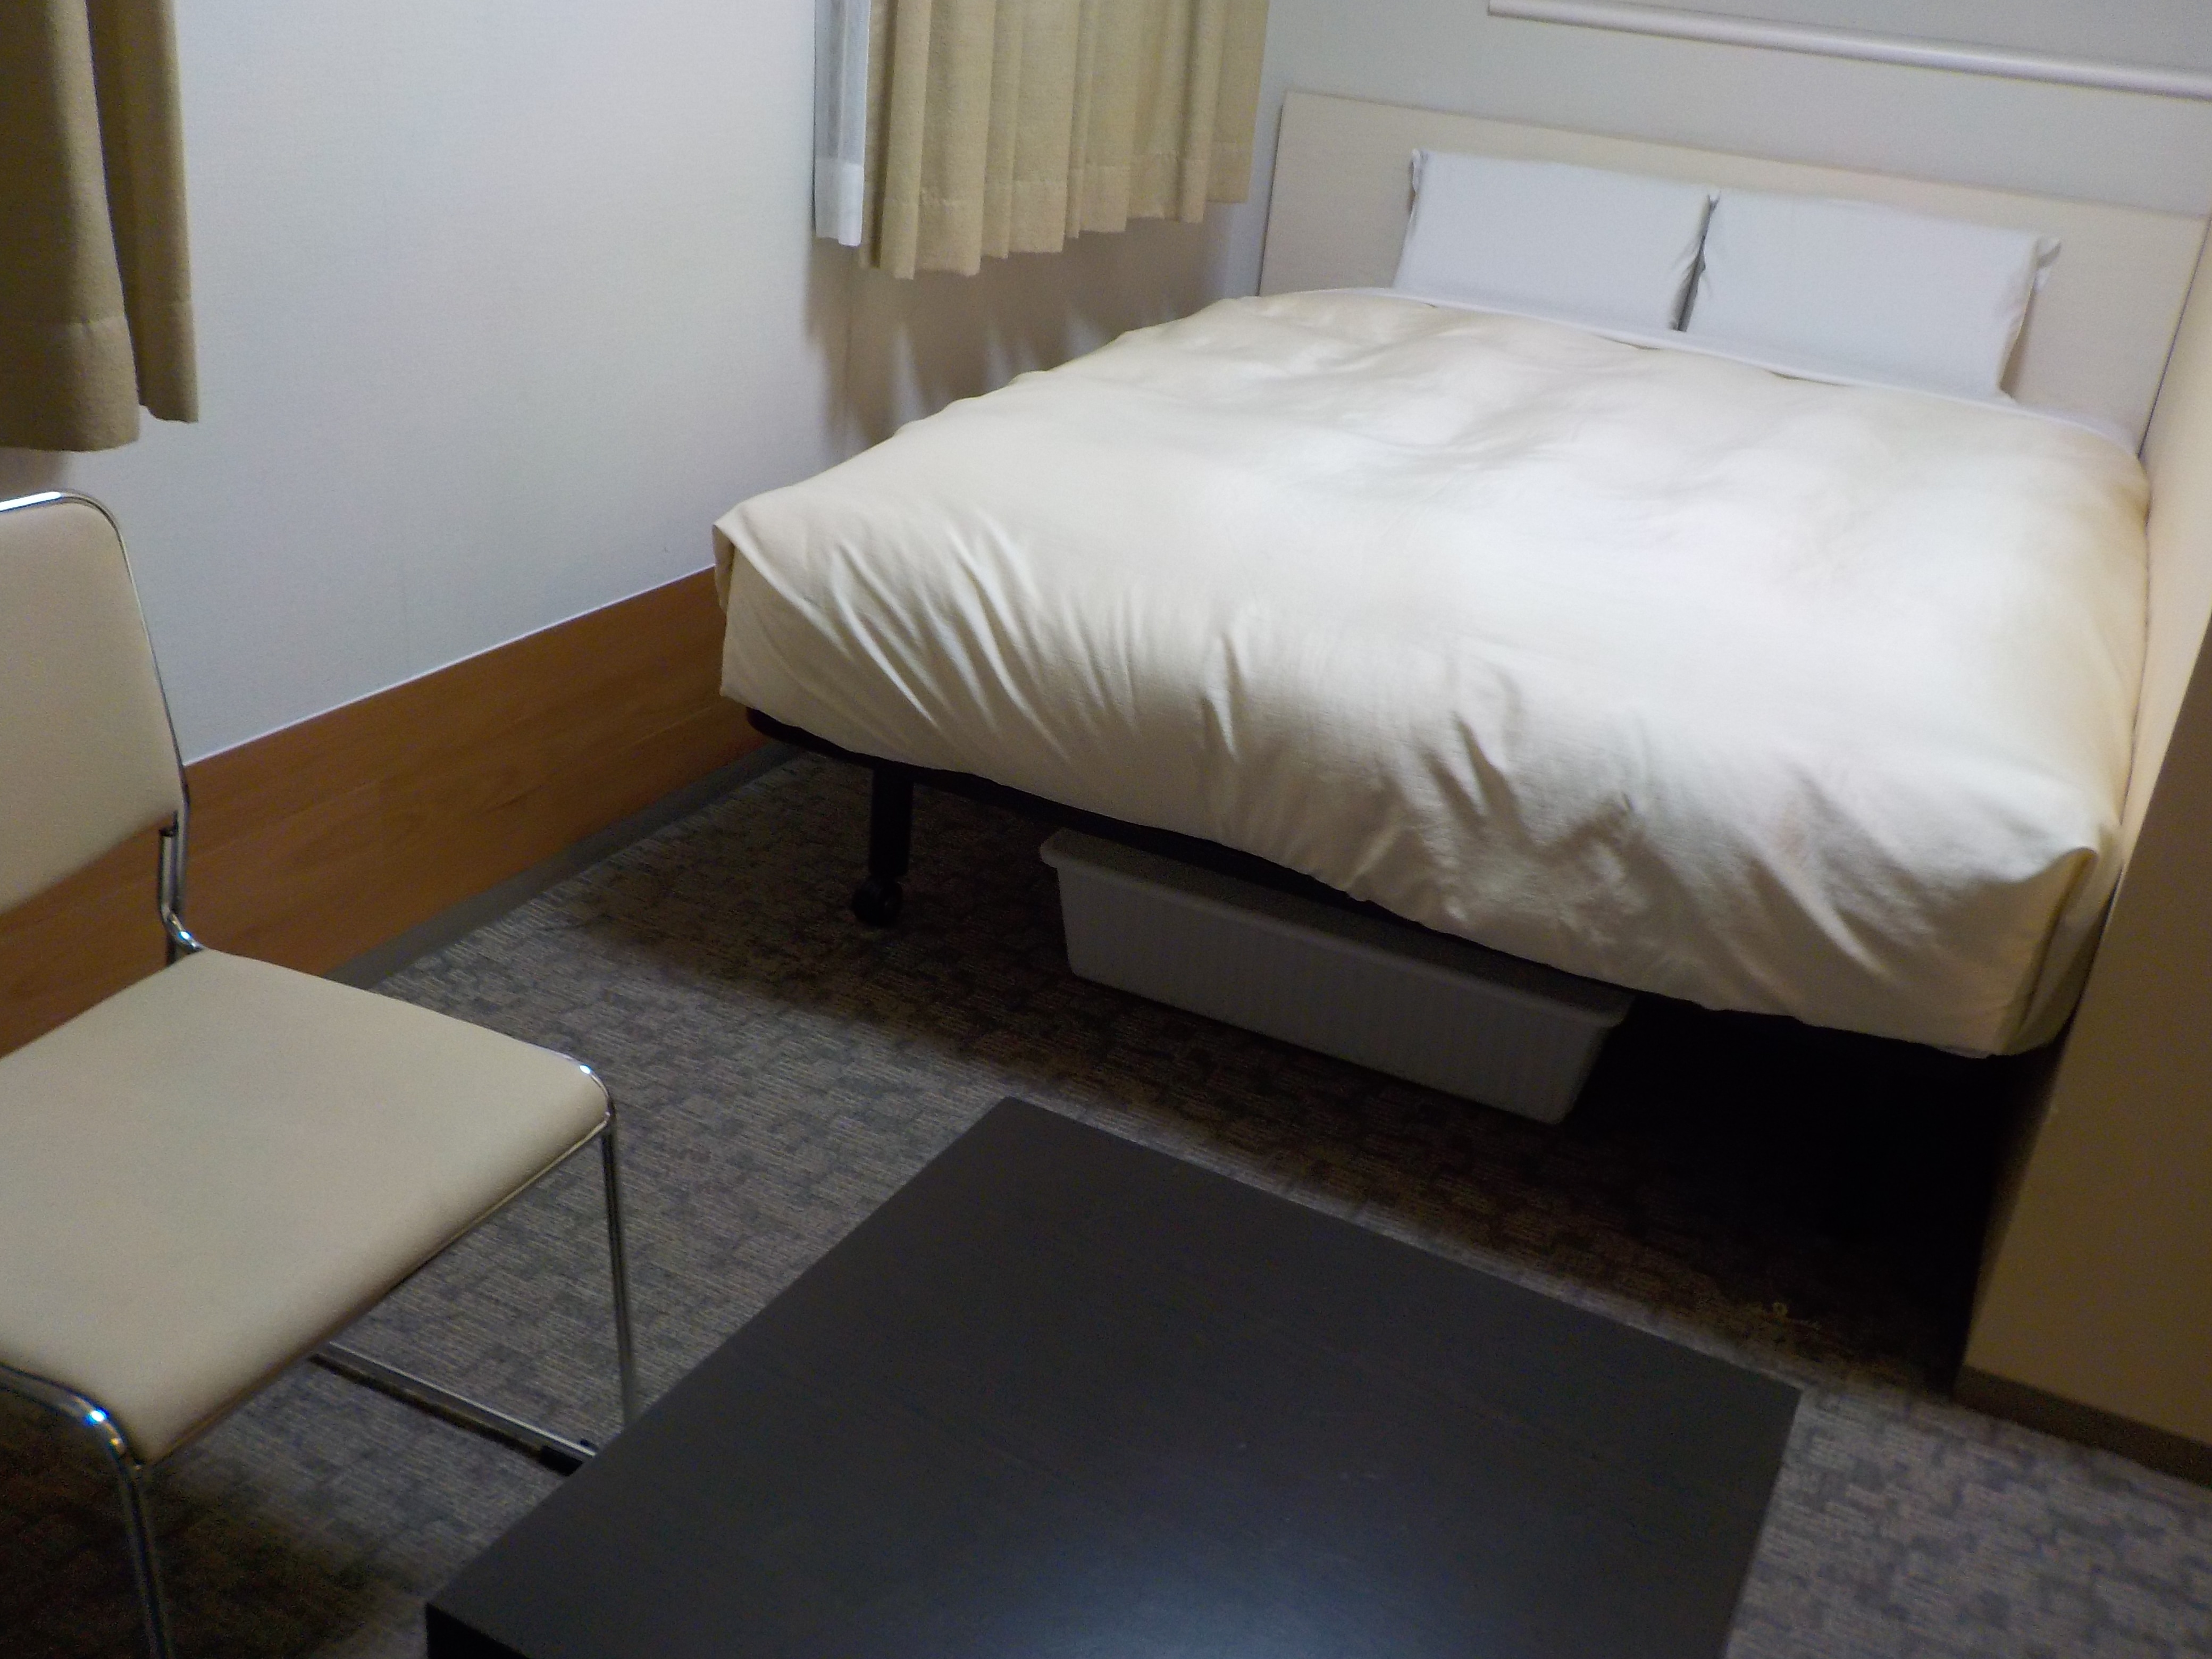 Double room (bed width 140 cm)